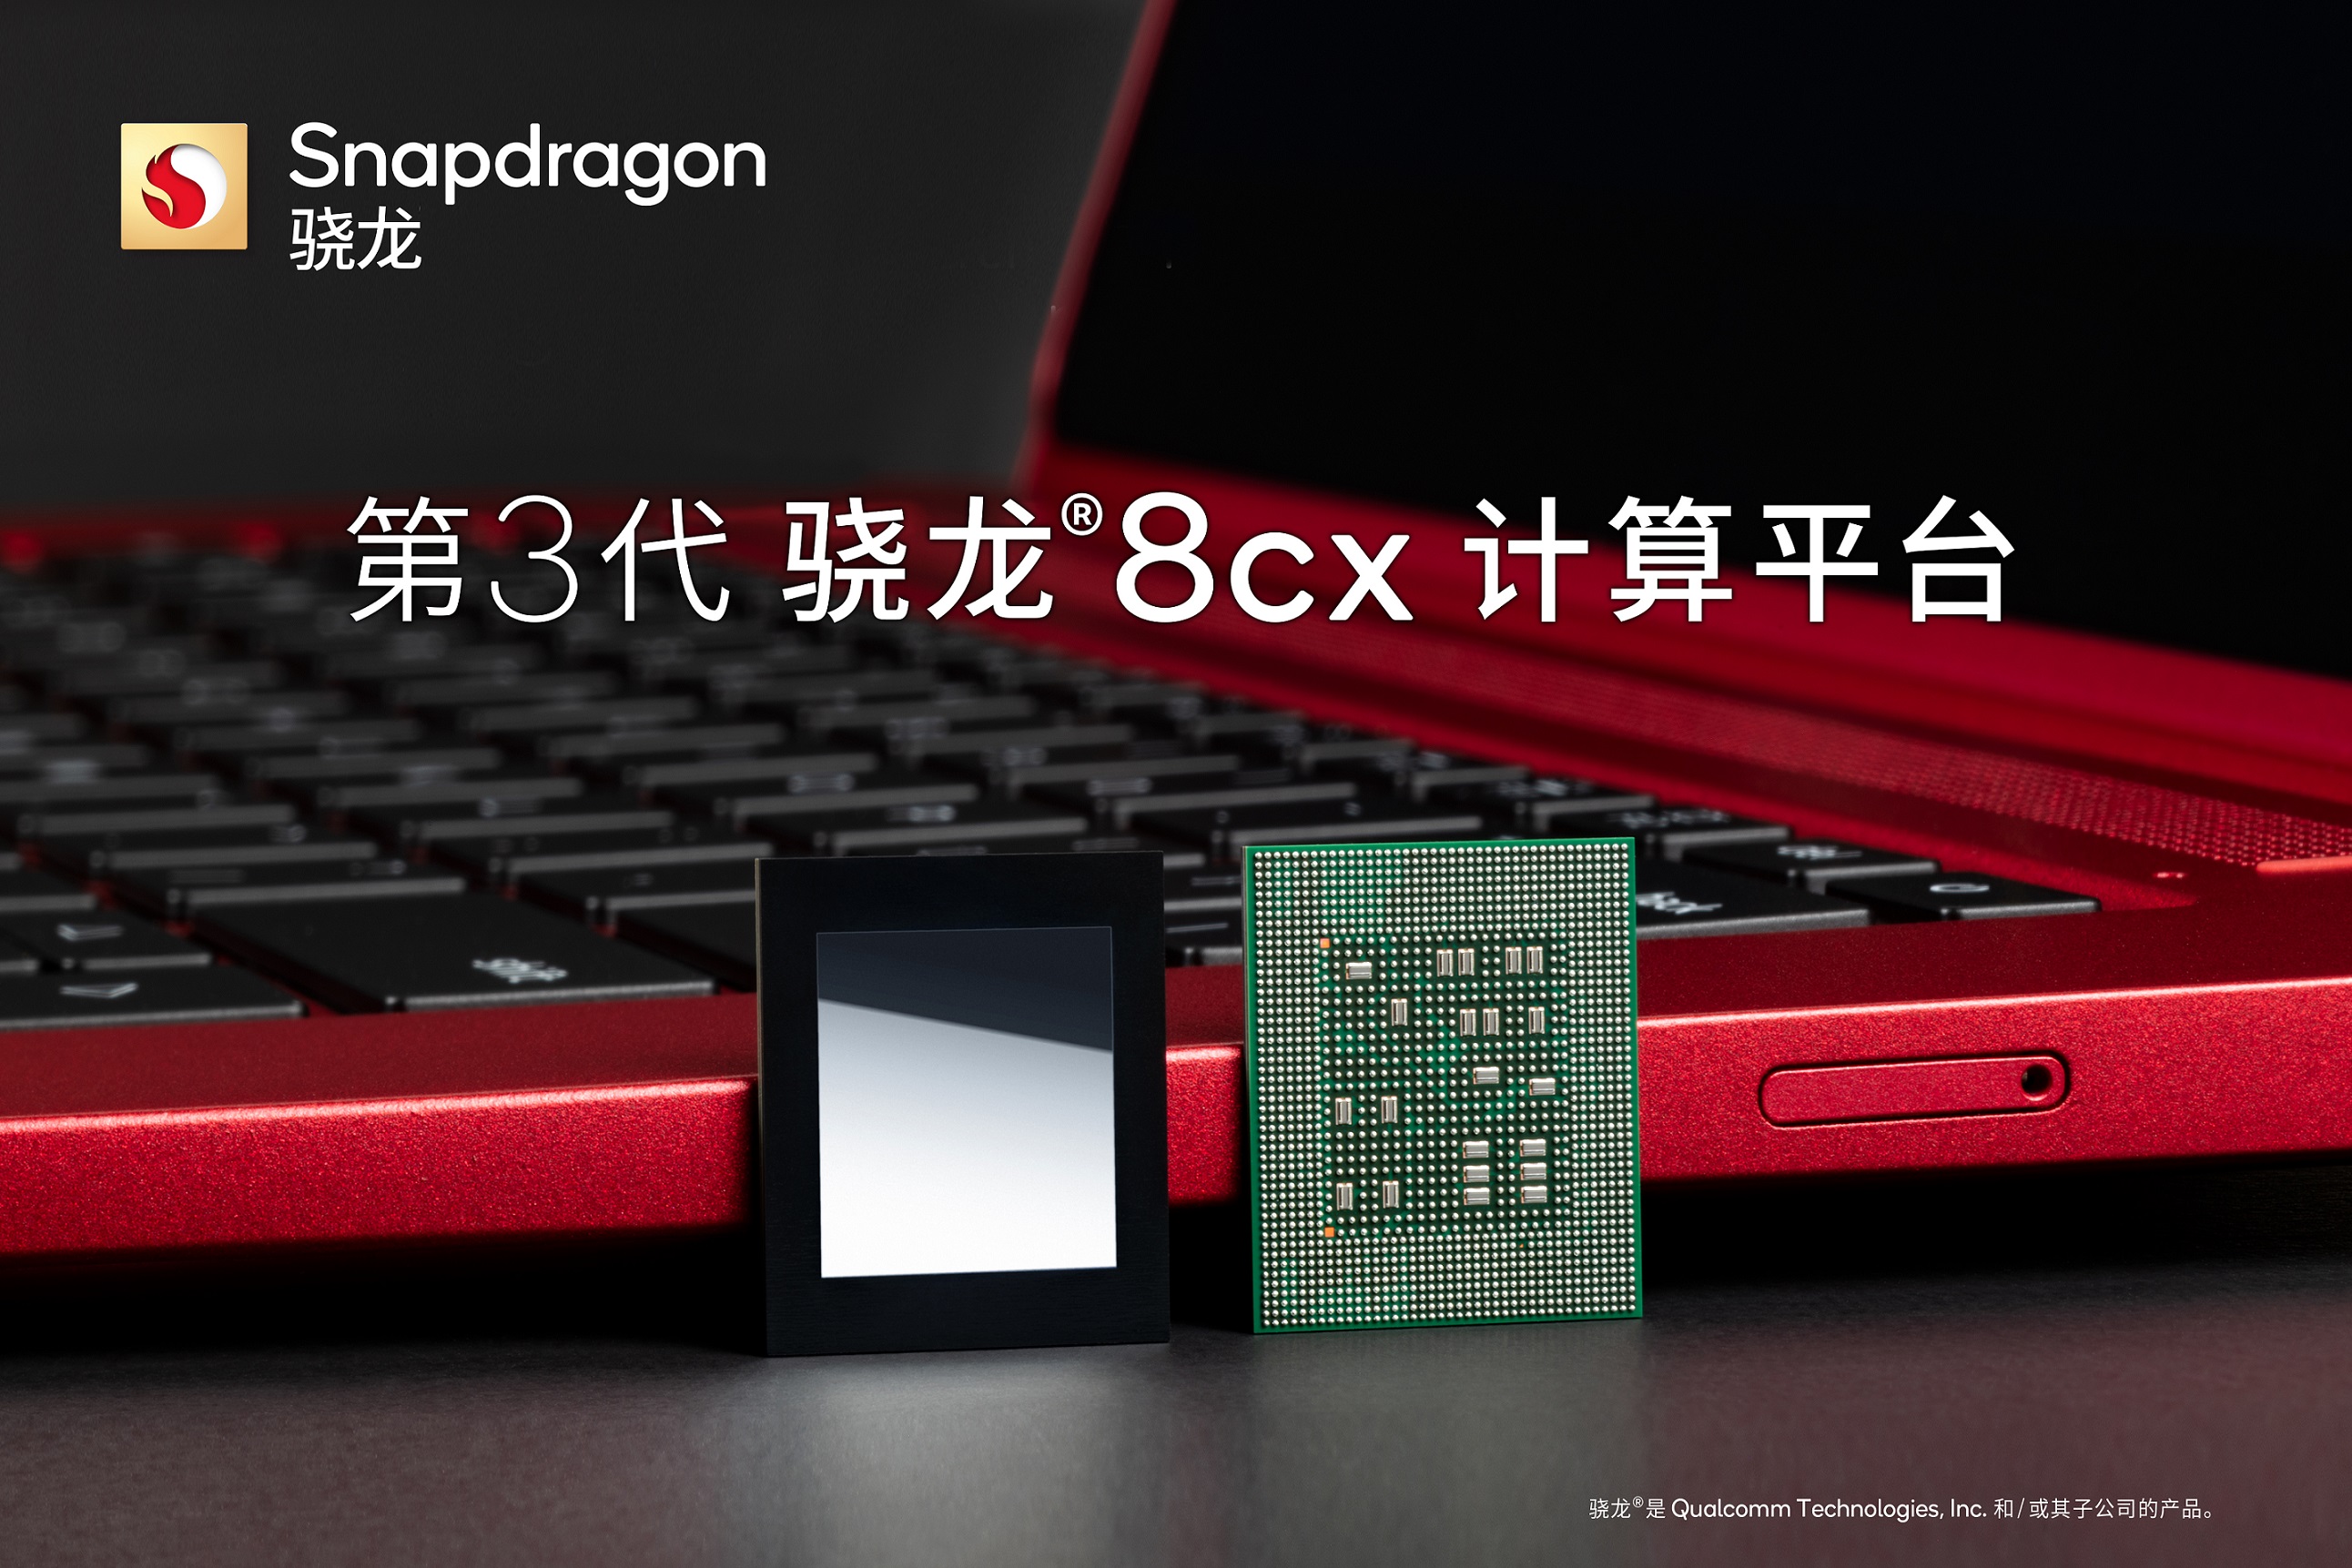 高通推出第3代驍龍8cx計算平臺和第3代驍龍7c+計算平臺以擴展產品組合從而加速移動計算的發展